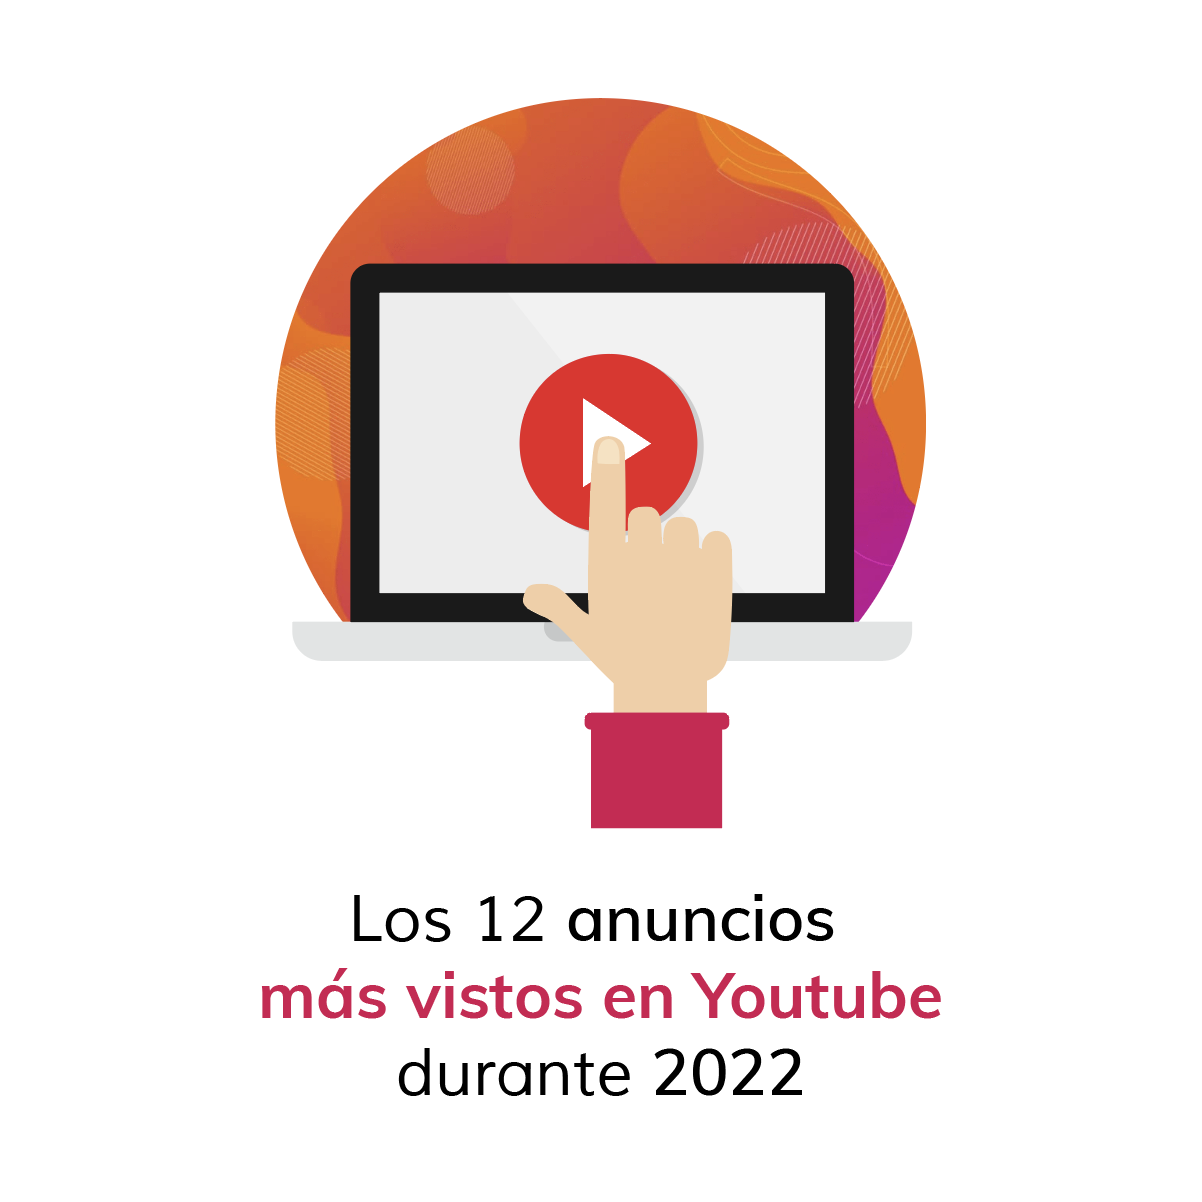 Los 12 anuncios más vistos en Youtube durante 2022 en España